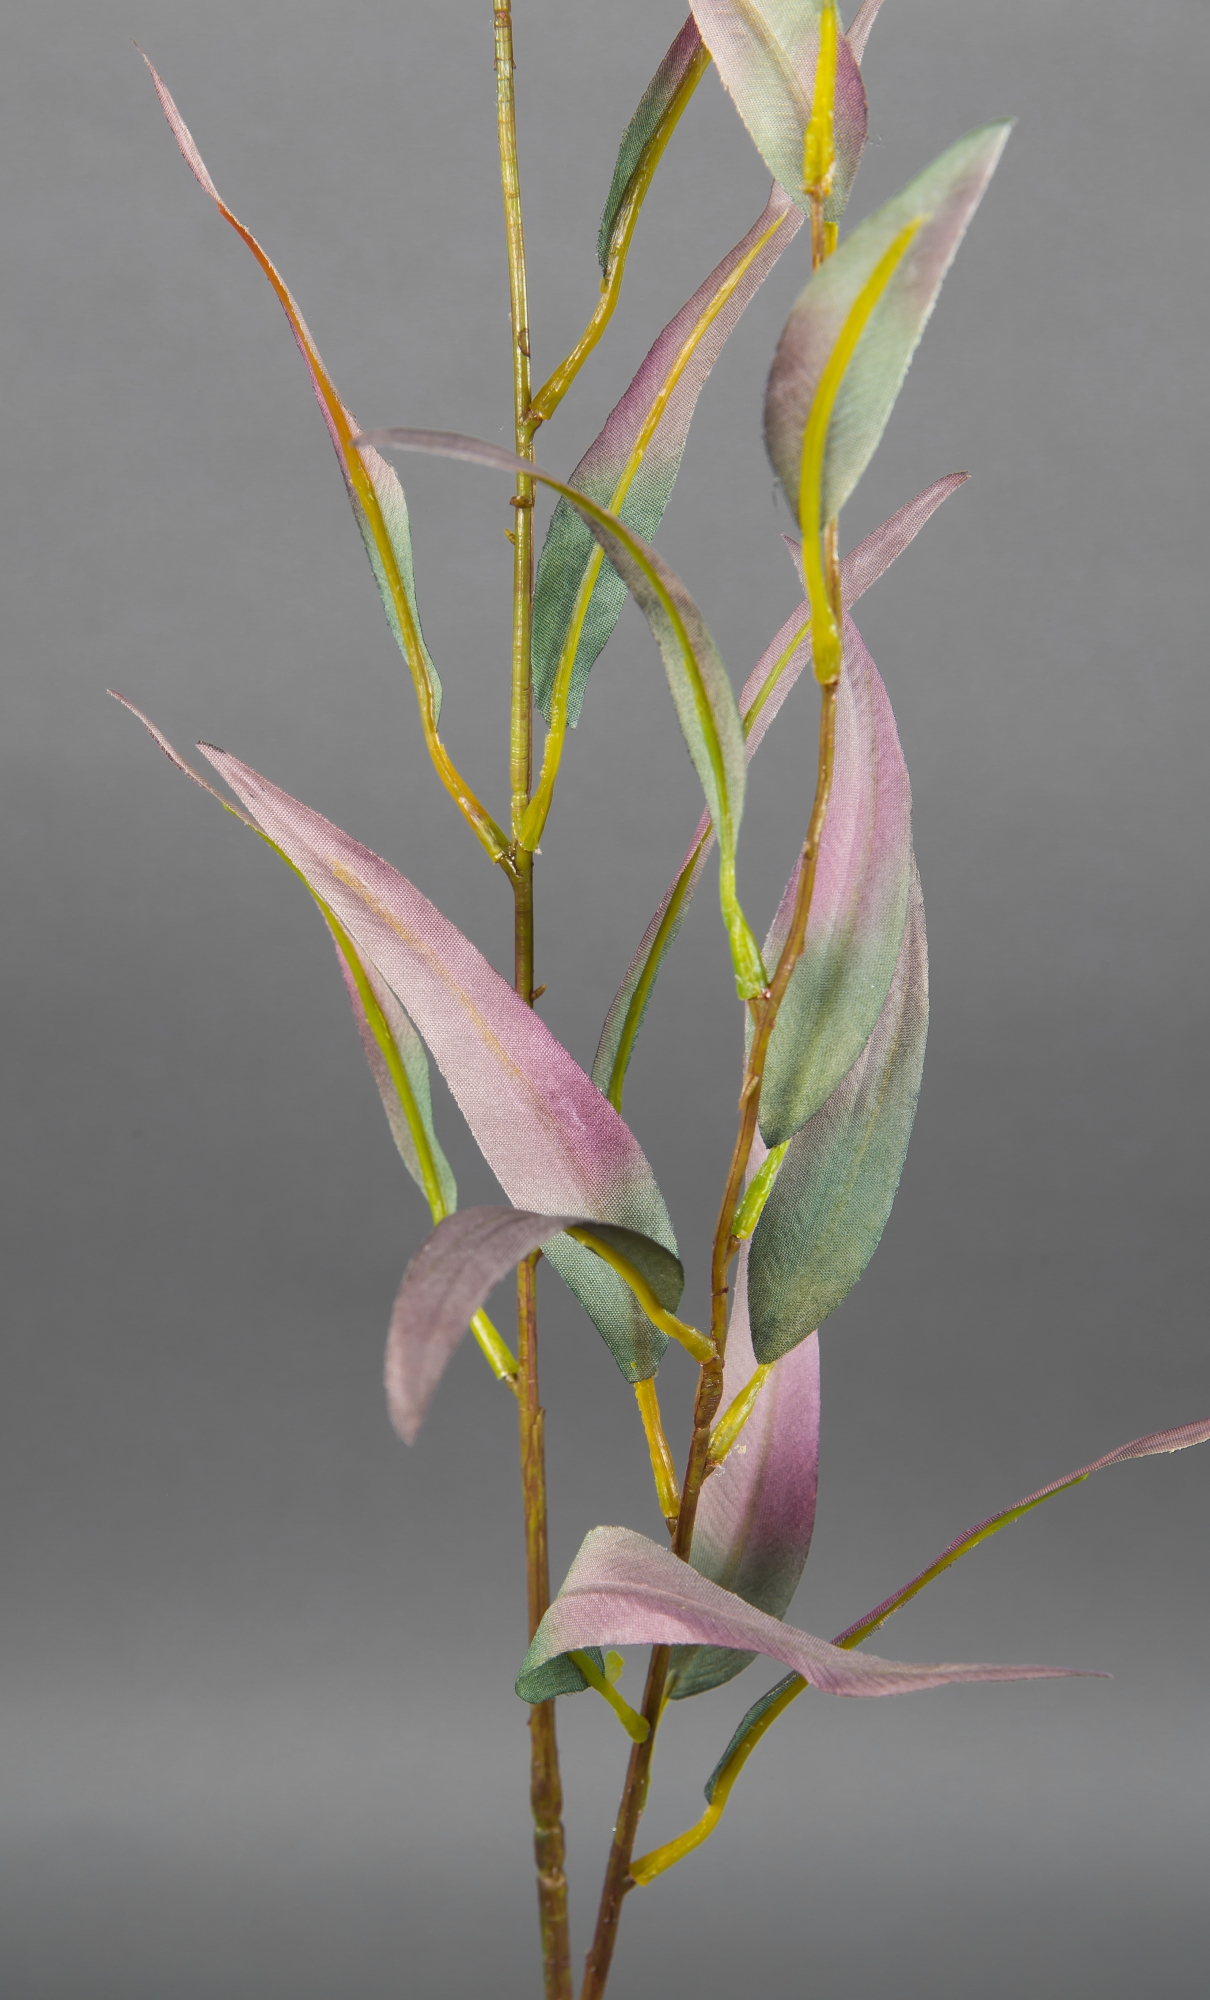 Eukalyptuszweig 90cm grün-rosa DP künstlicher Kunstzweig Eukalyptus Kunstpflanzen künstliche Zweige